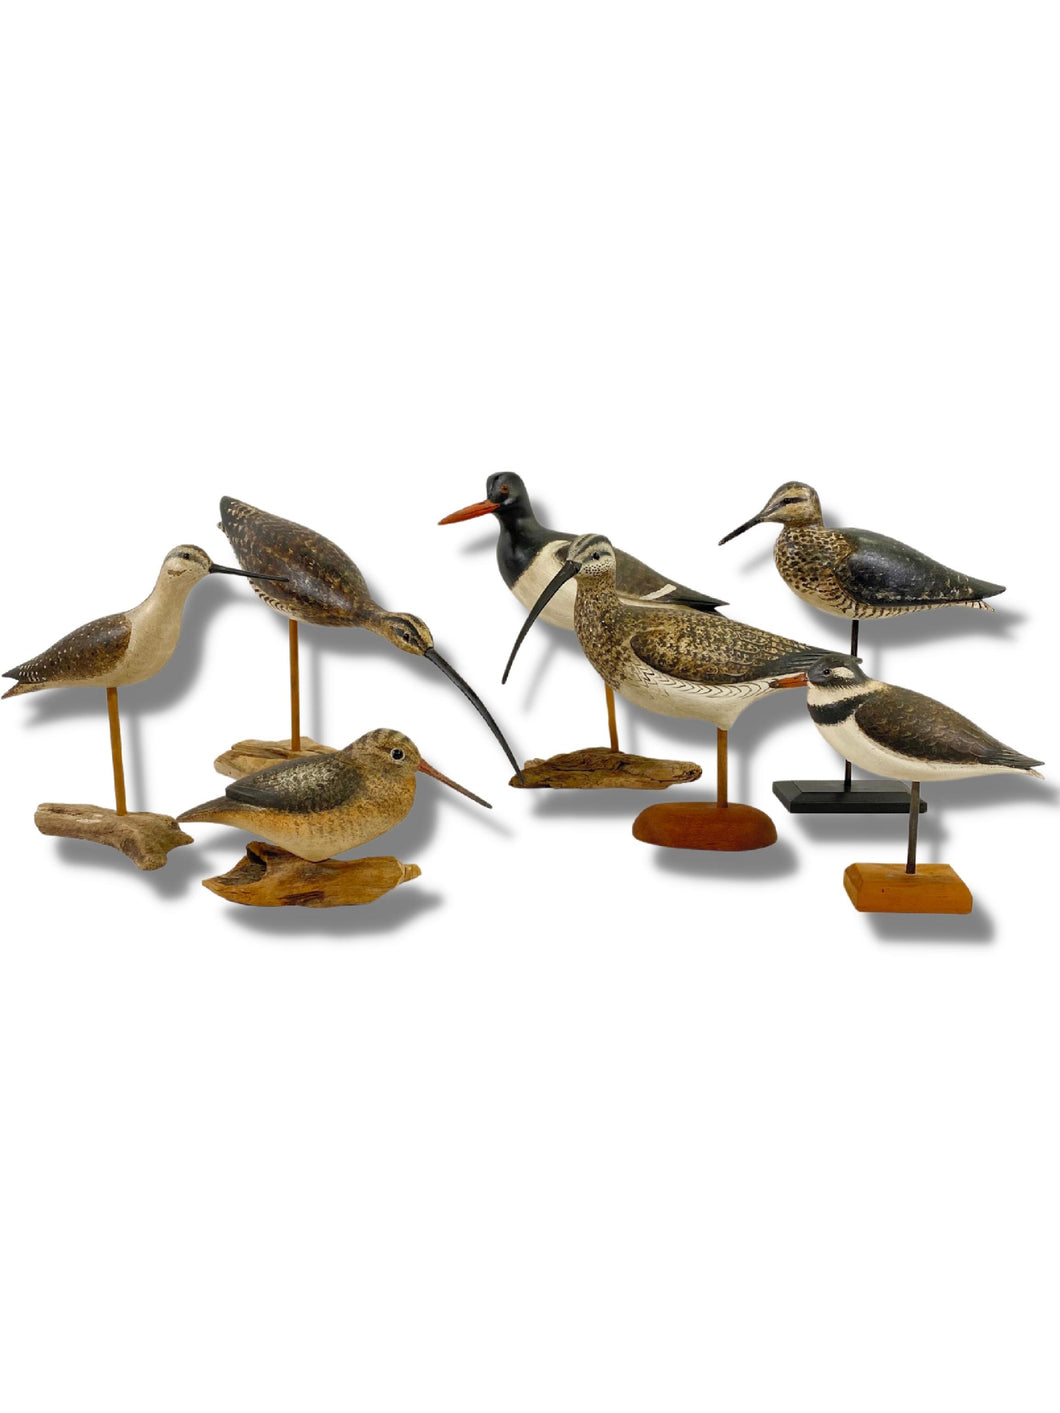 Collection of Ken Kirby Shorebirds